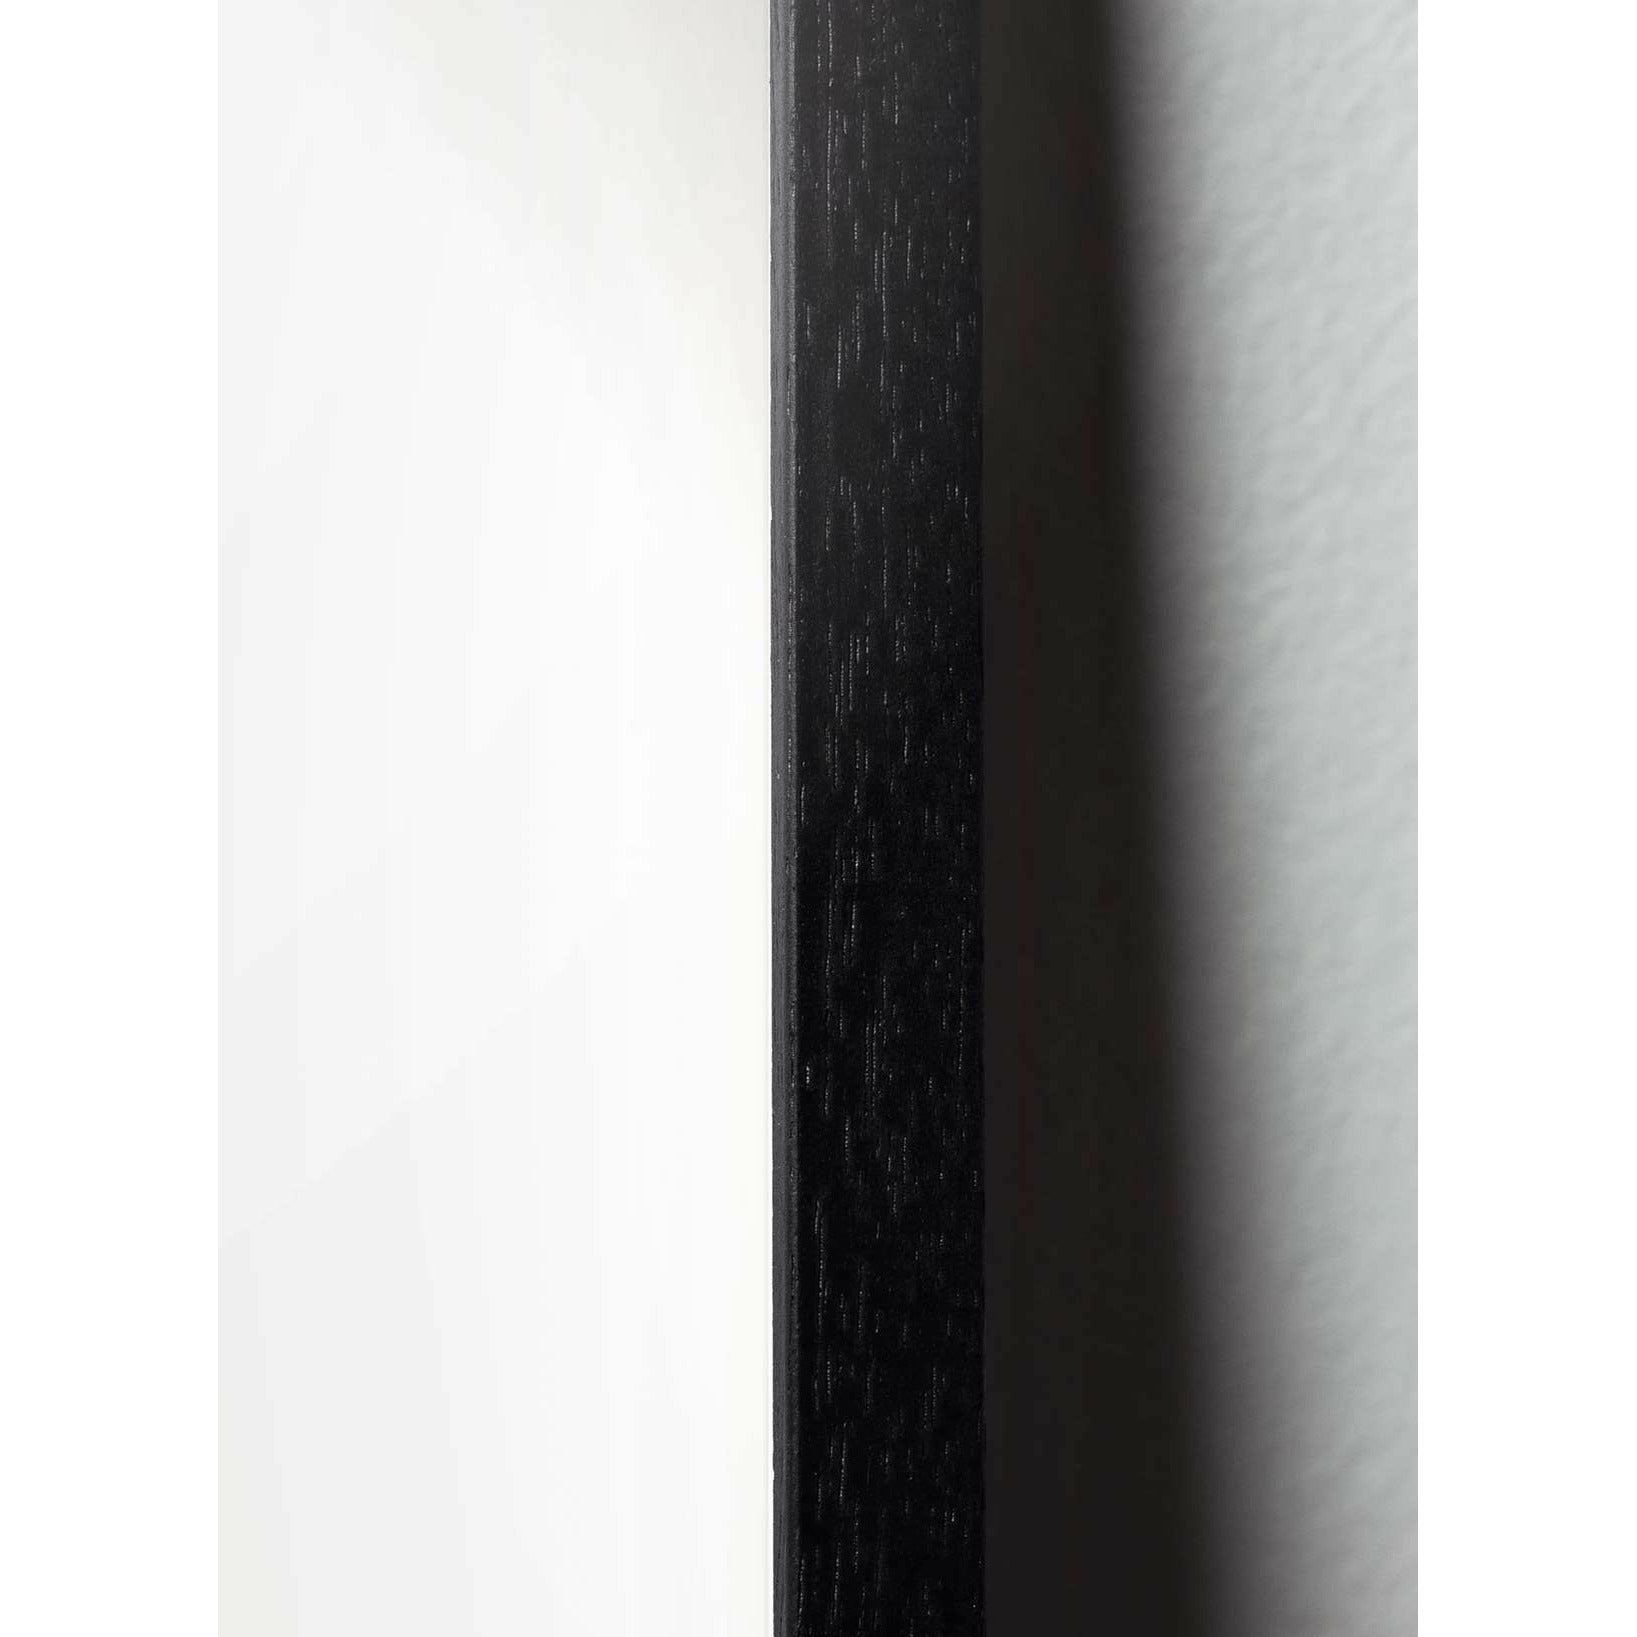 Pomysły plakat łabędzia, rama w czarnym lakierowanym drewnie 30x40 cm, białe tło